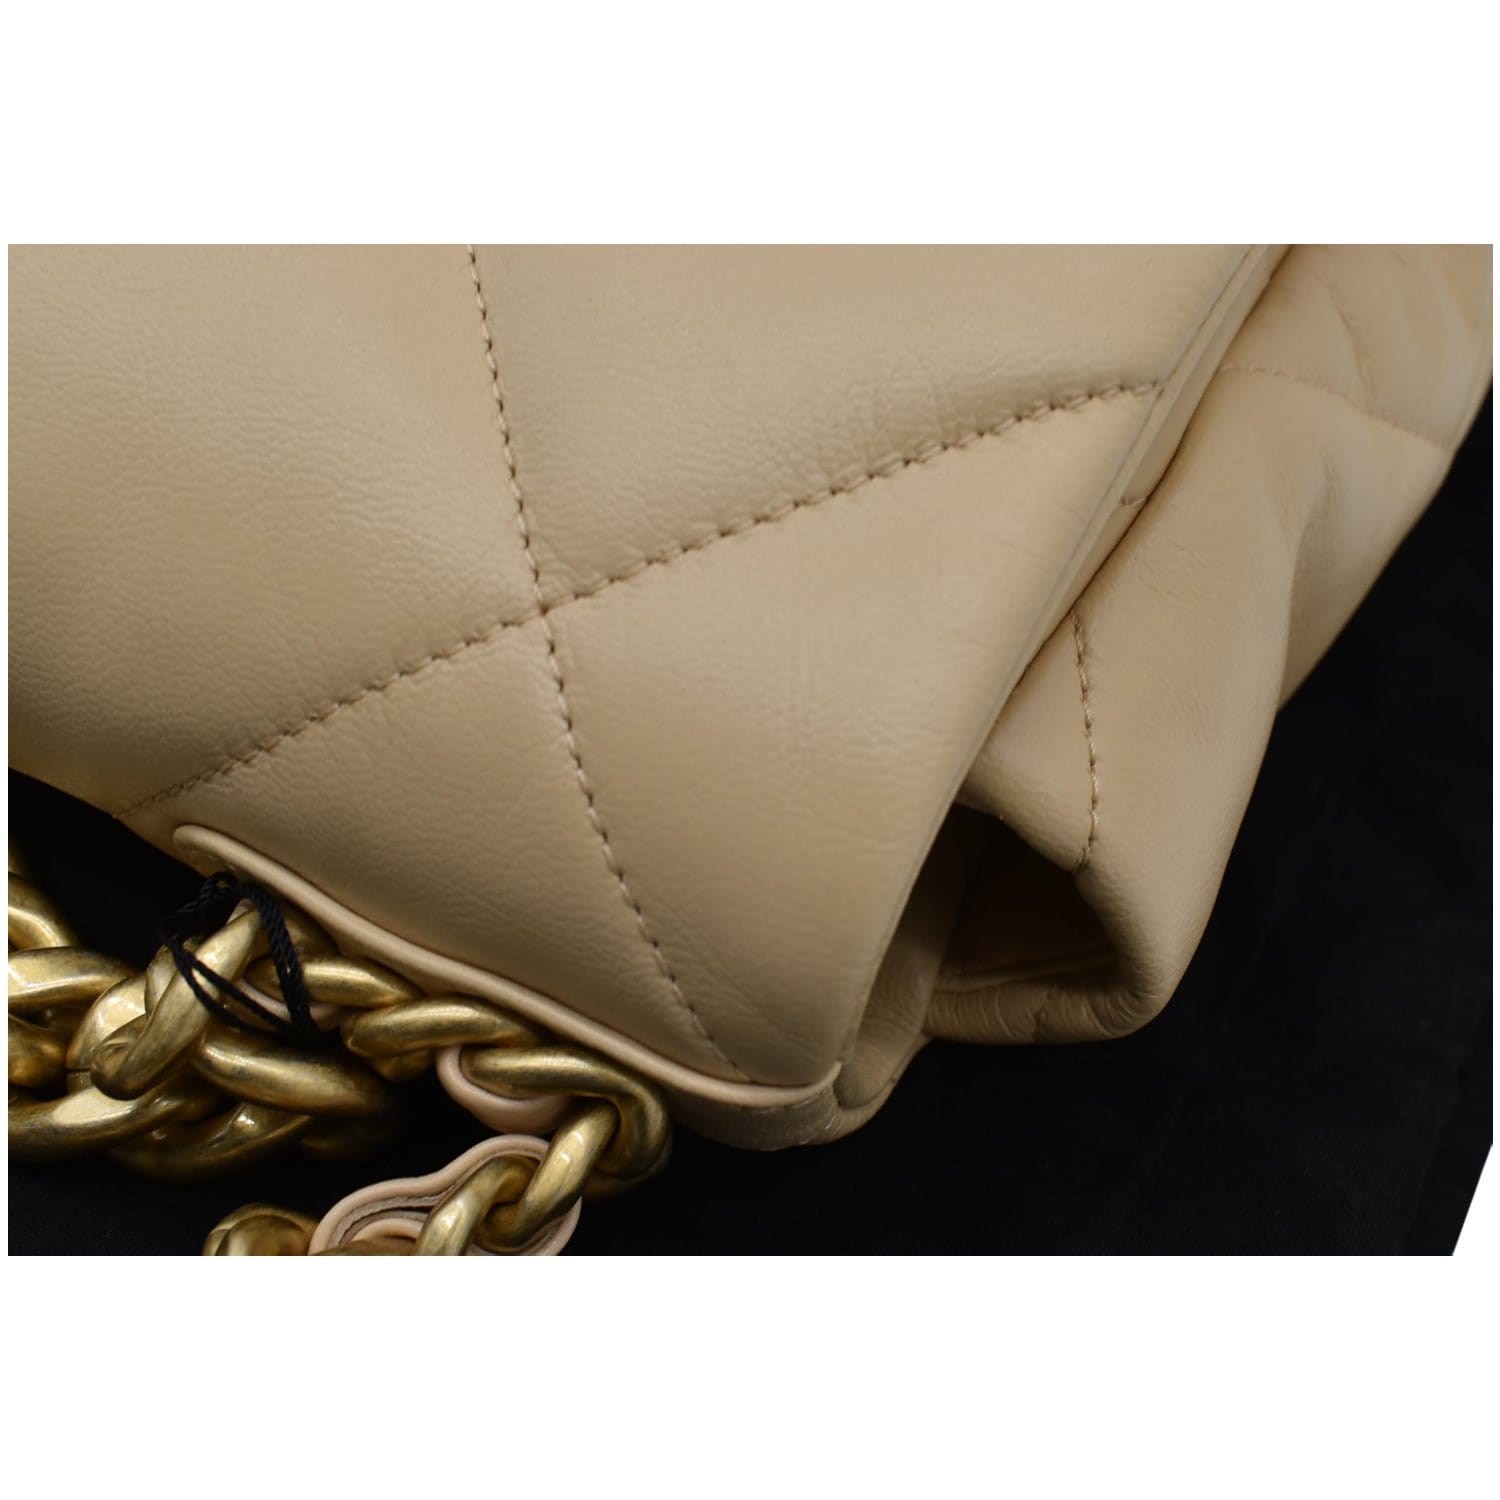 Catalog - June Luxury Handbags, Shoes & Fashion